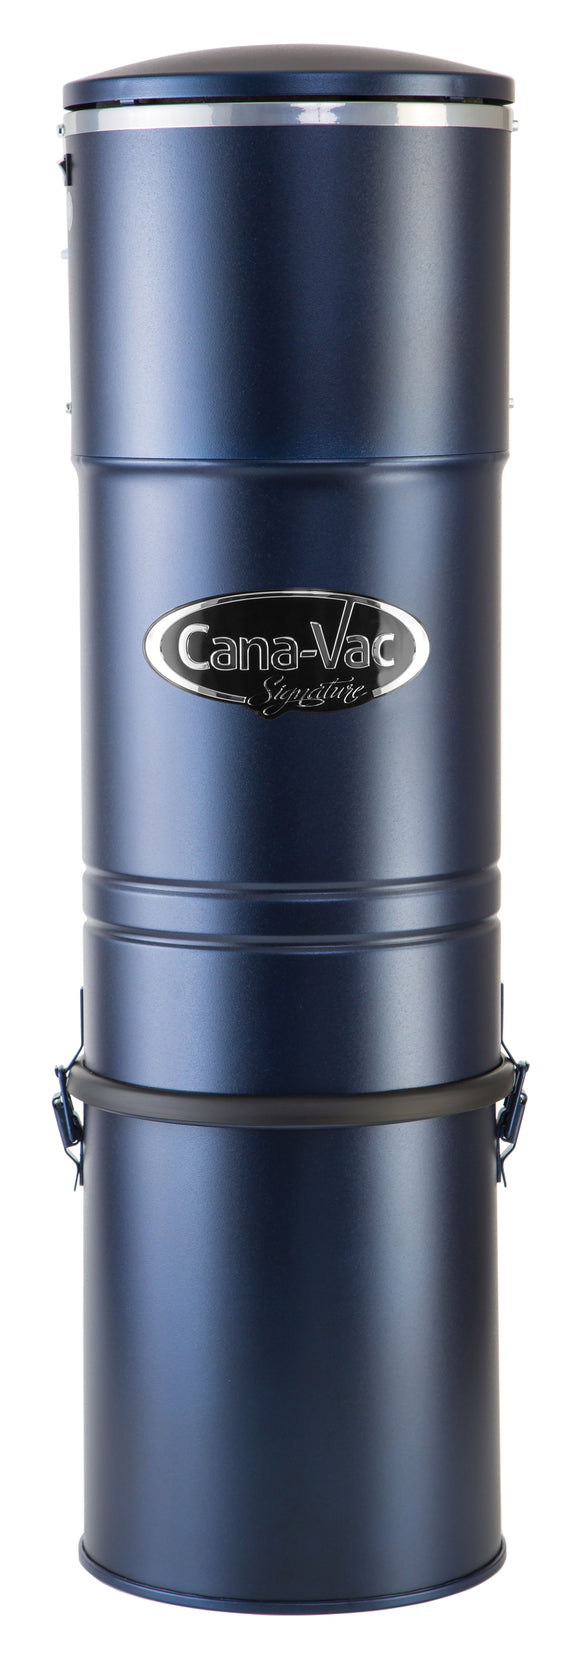 Cana-Vac Signature LS690 Central Vacuum - VacuumStore.com